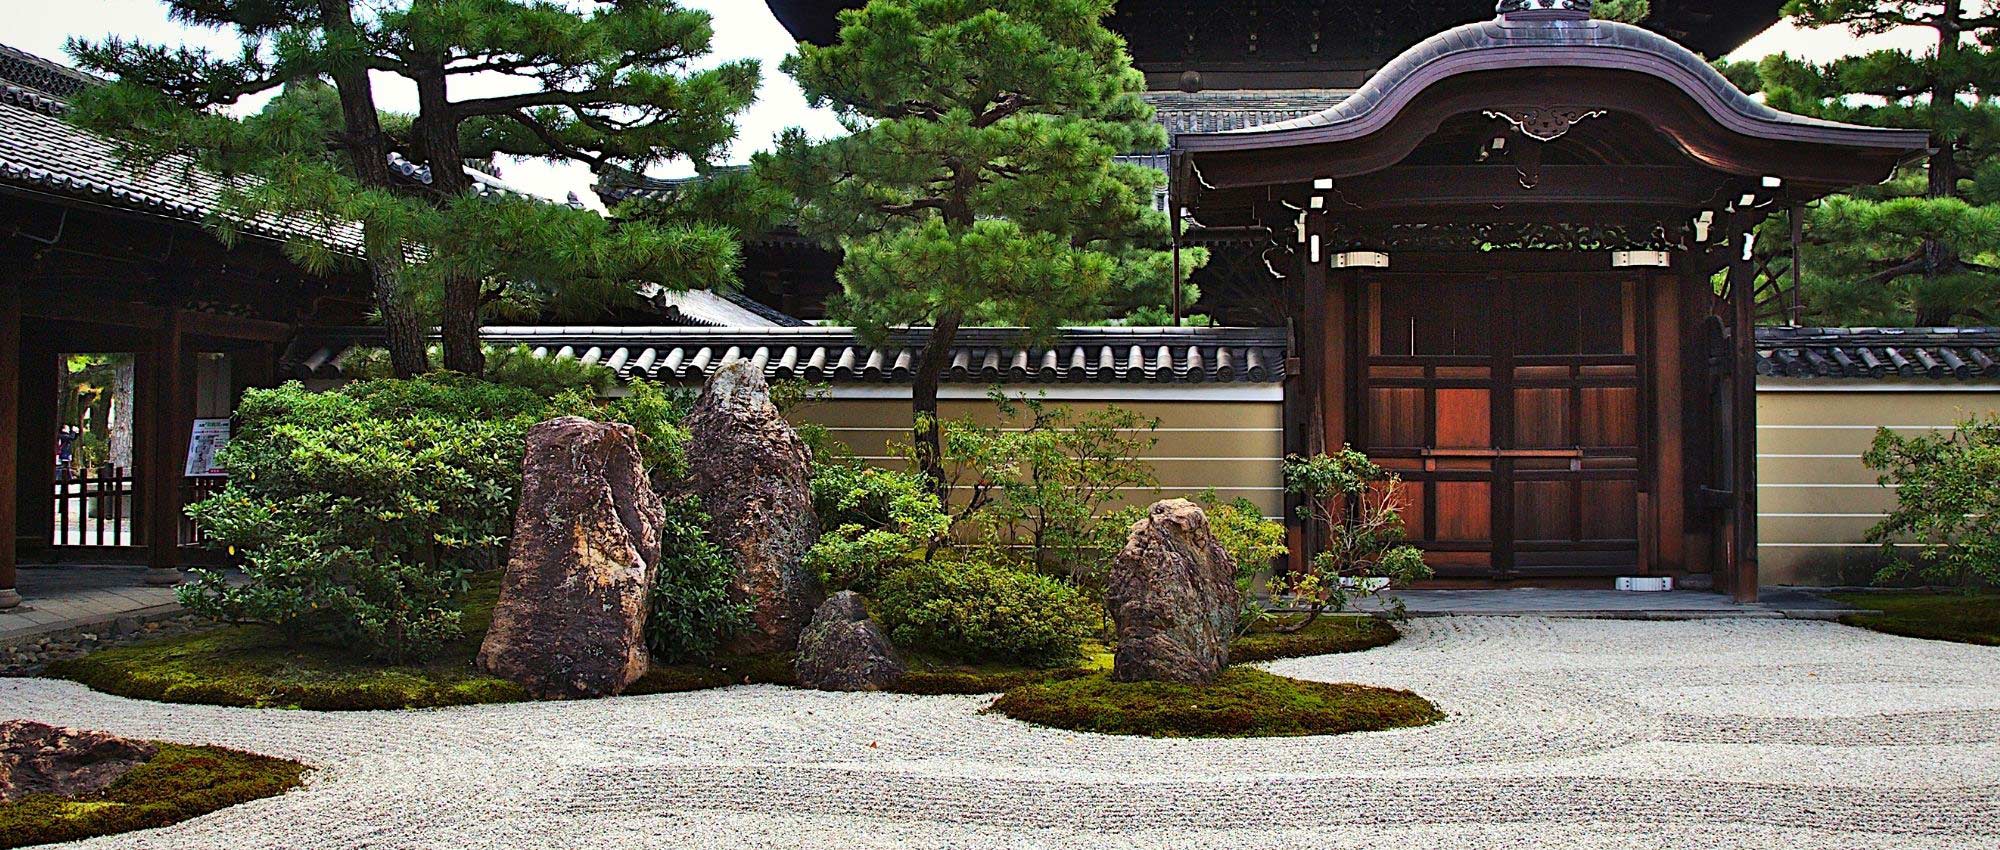 Jardin japonais : 10 arbustes emblématiques